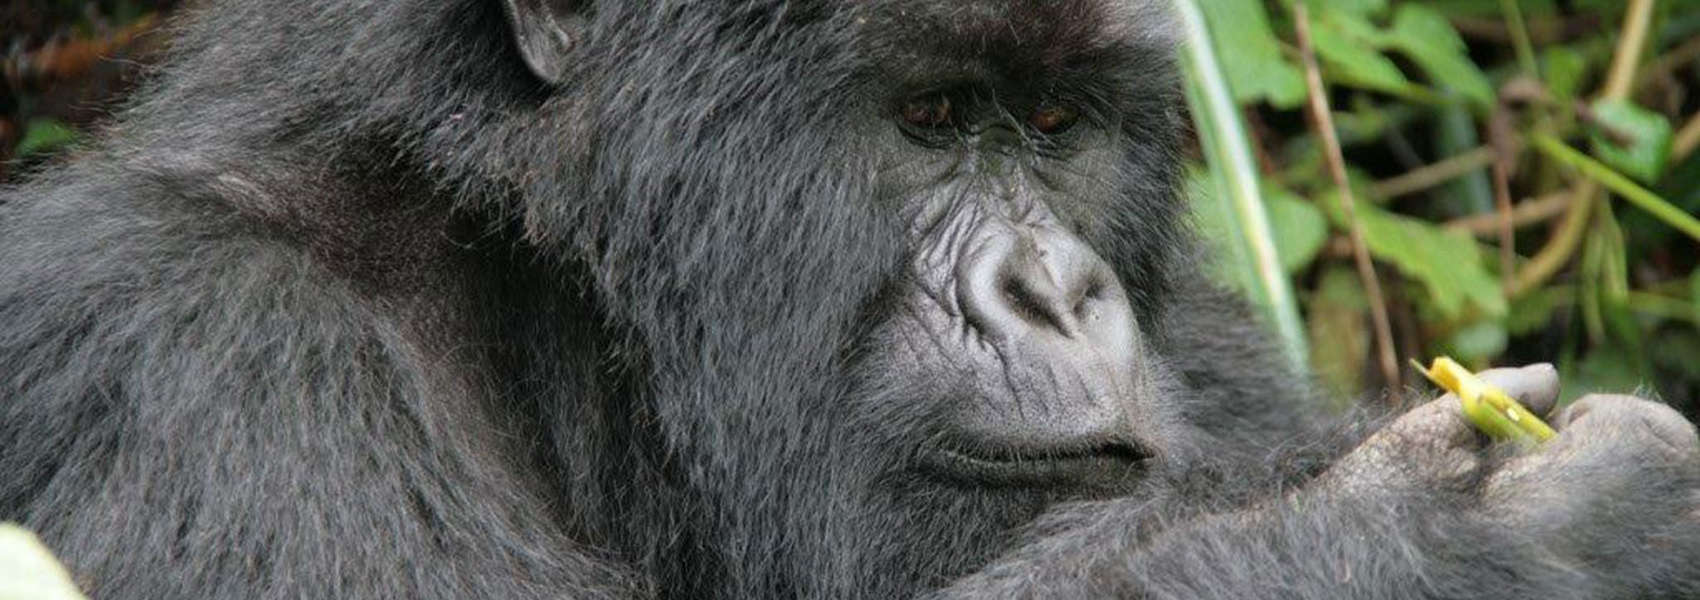 Gorilla Safari in Rwanda Gorillas